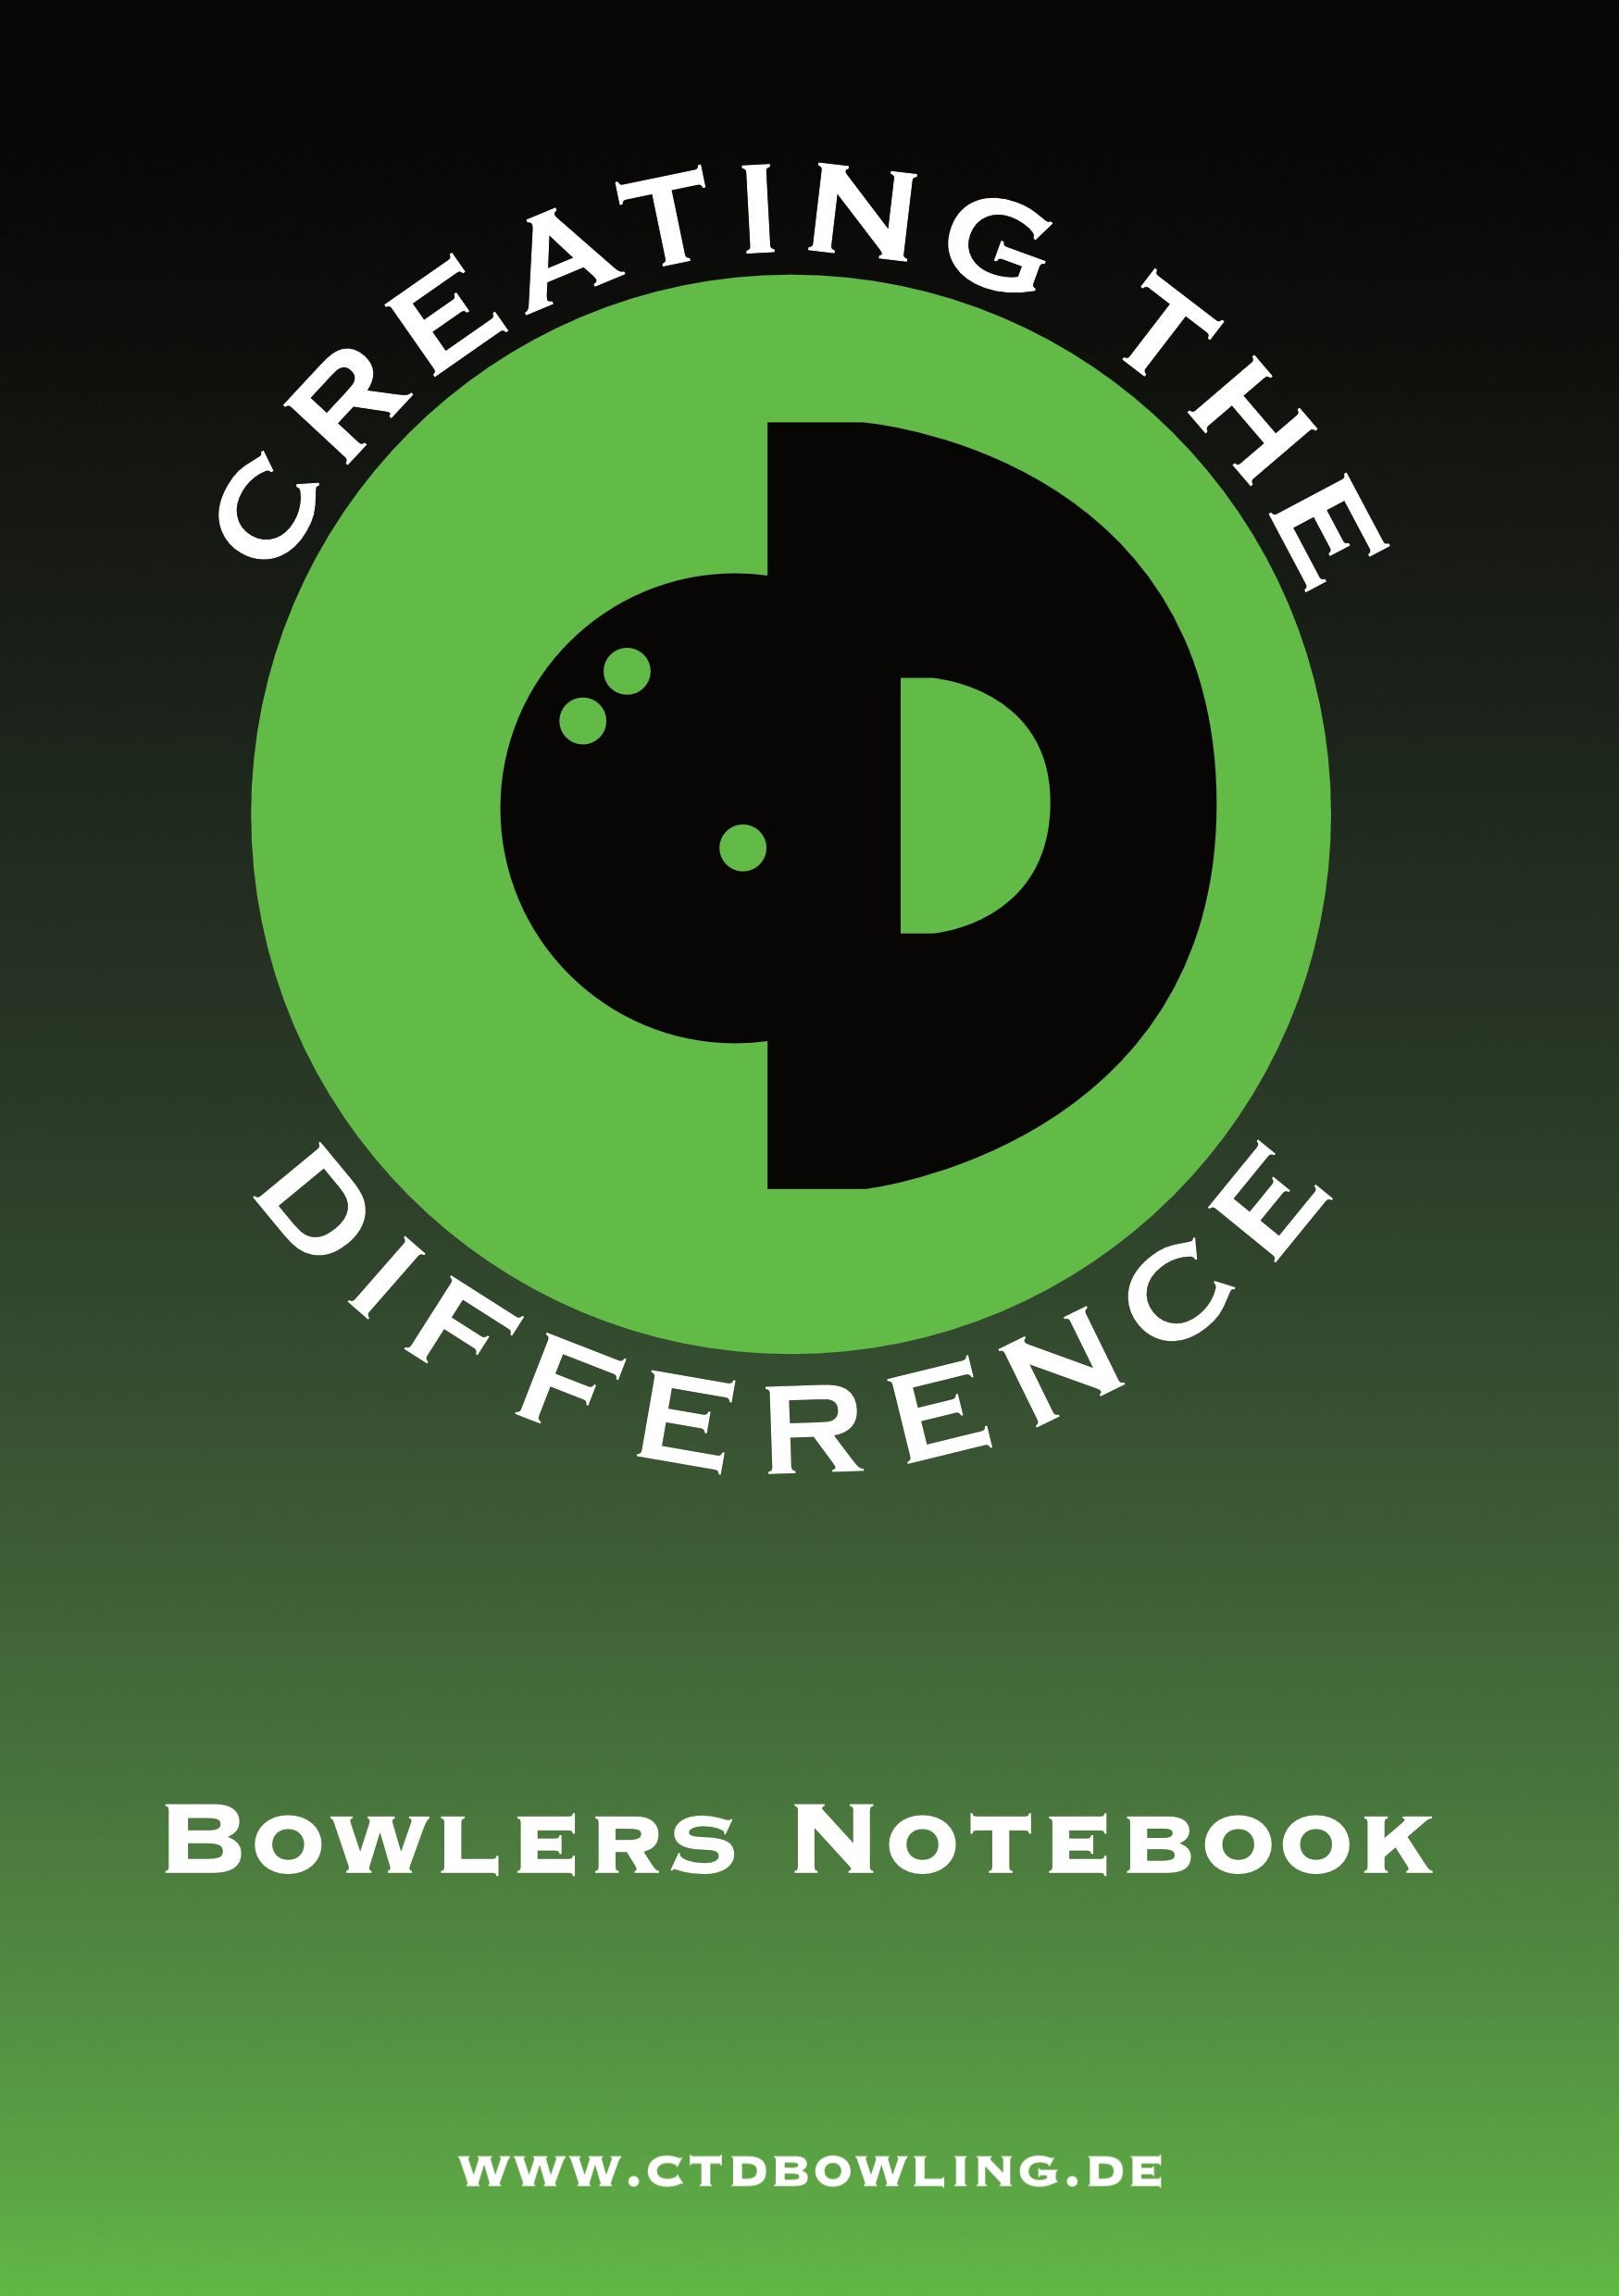 CtD Bowlers Notebook